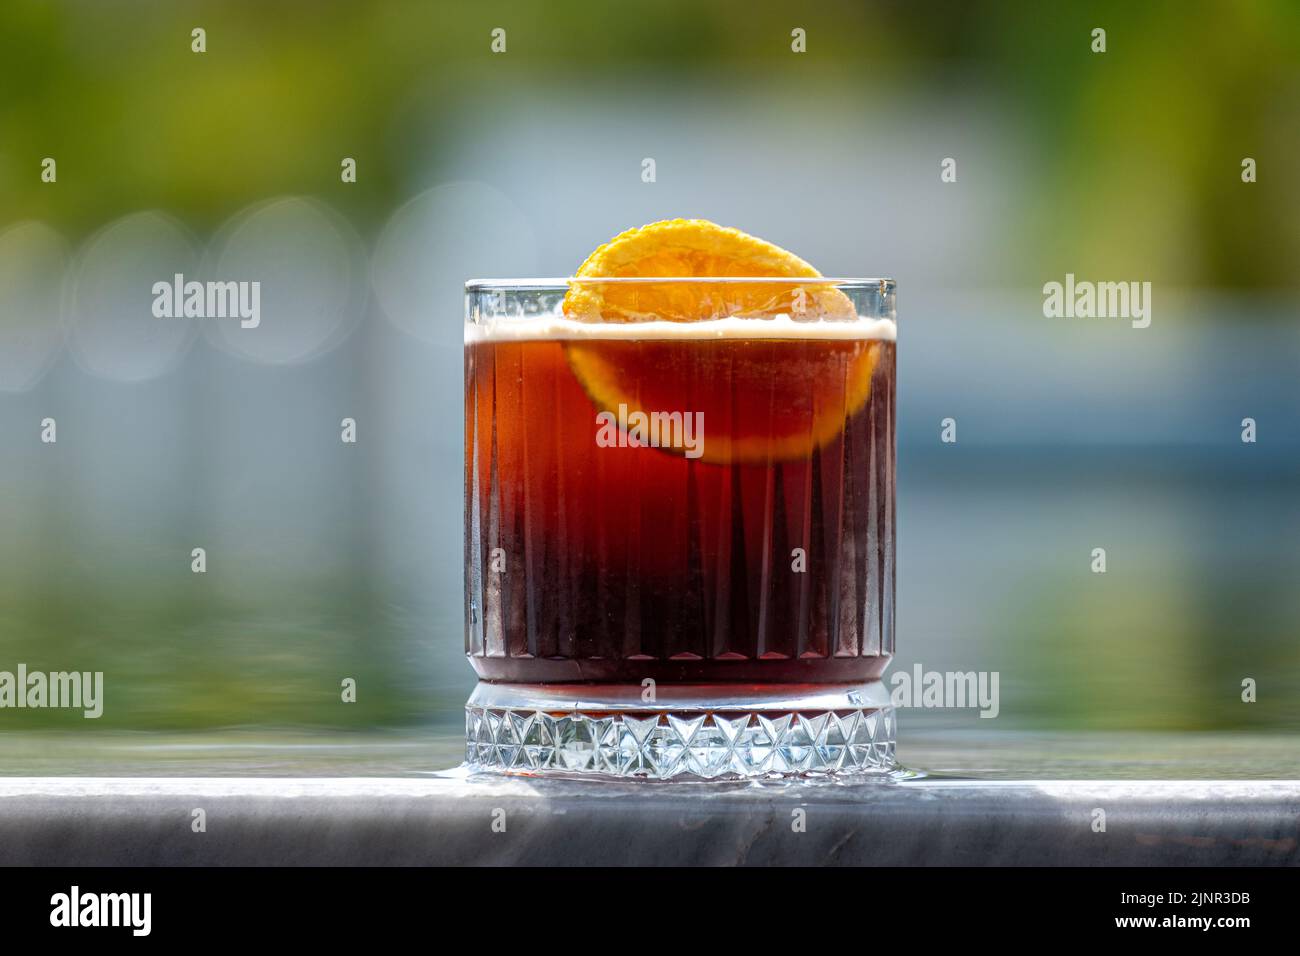 Refrescante cóctel de verano afrutado y alcohólico sobre fondo oscuro Foto de stock